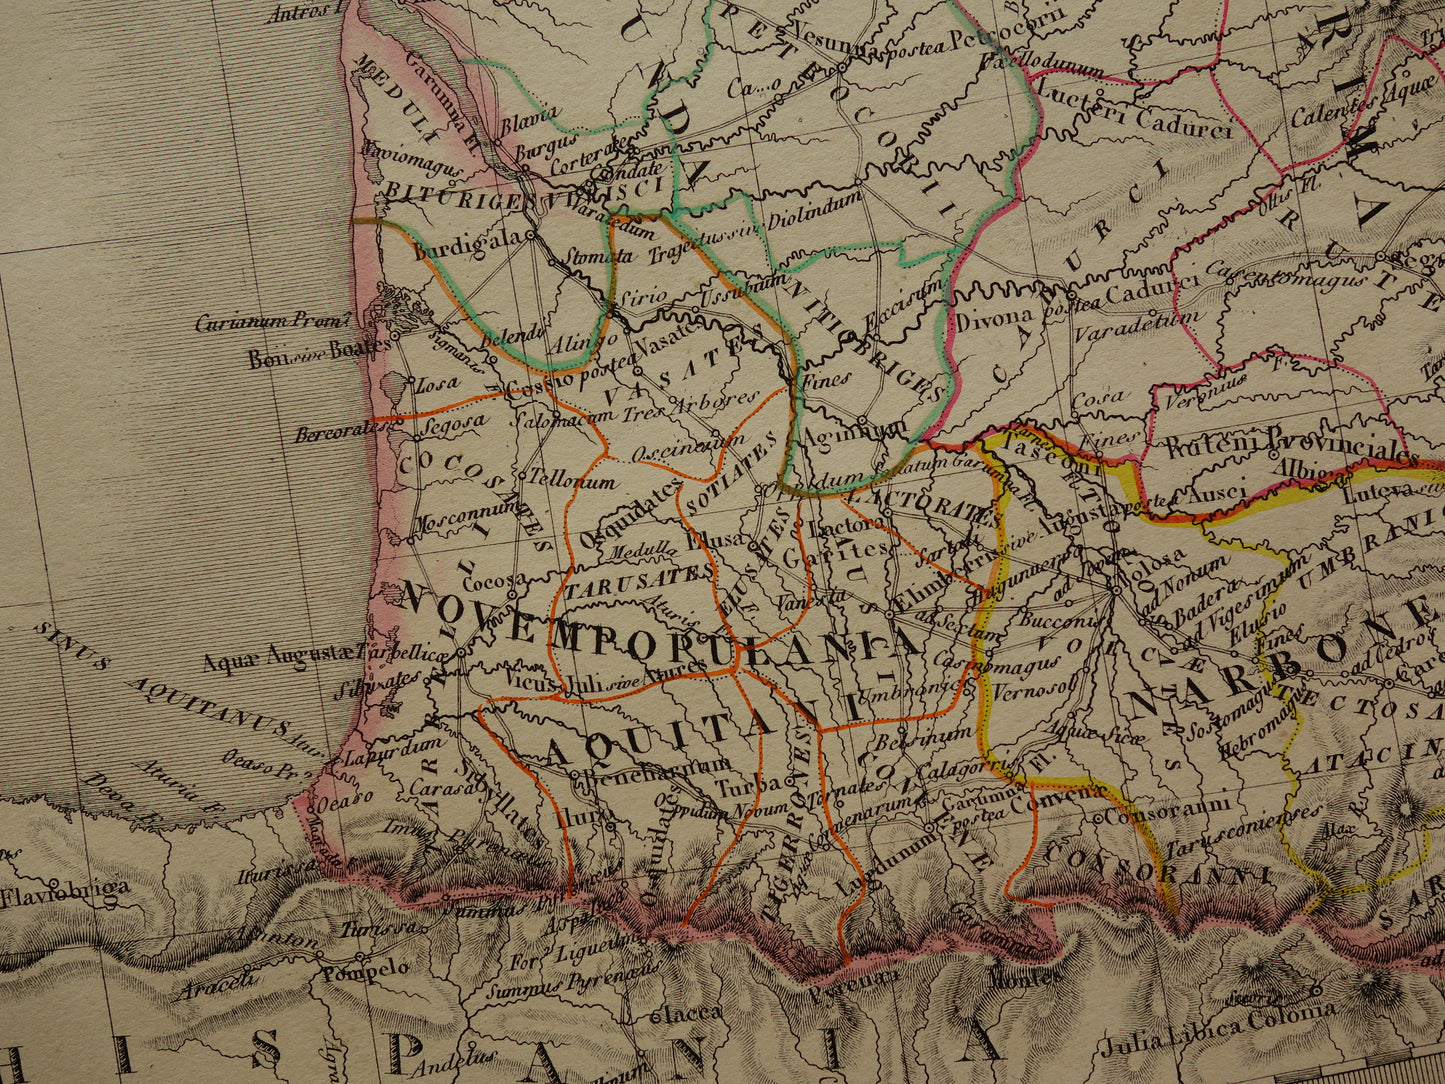 Limes oude historische landkaart van Romeinse Rijk in Nederland België en Frankrijk 1842 originele antieke kaart Gallië grens Rijn